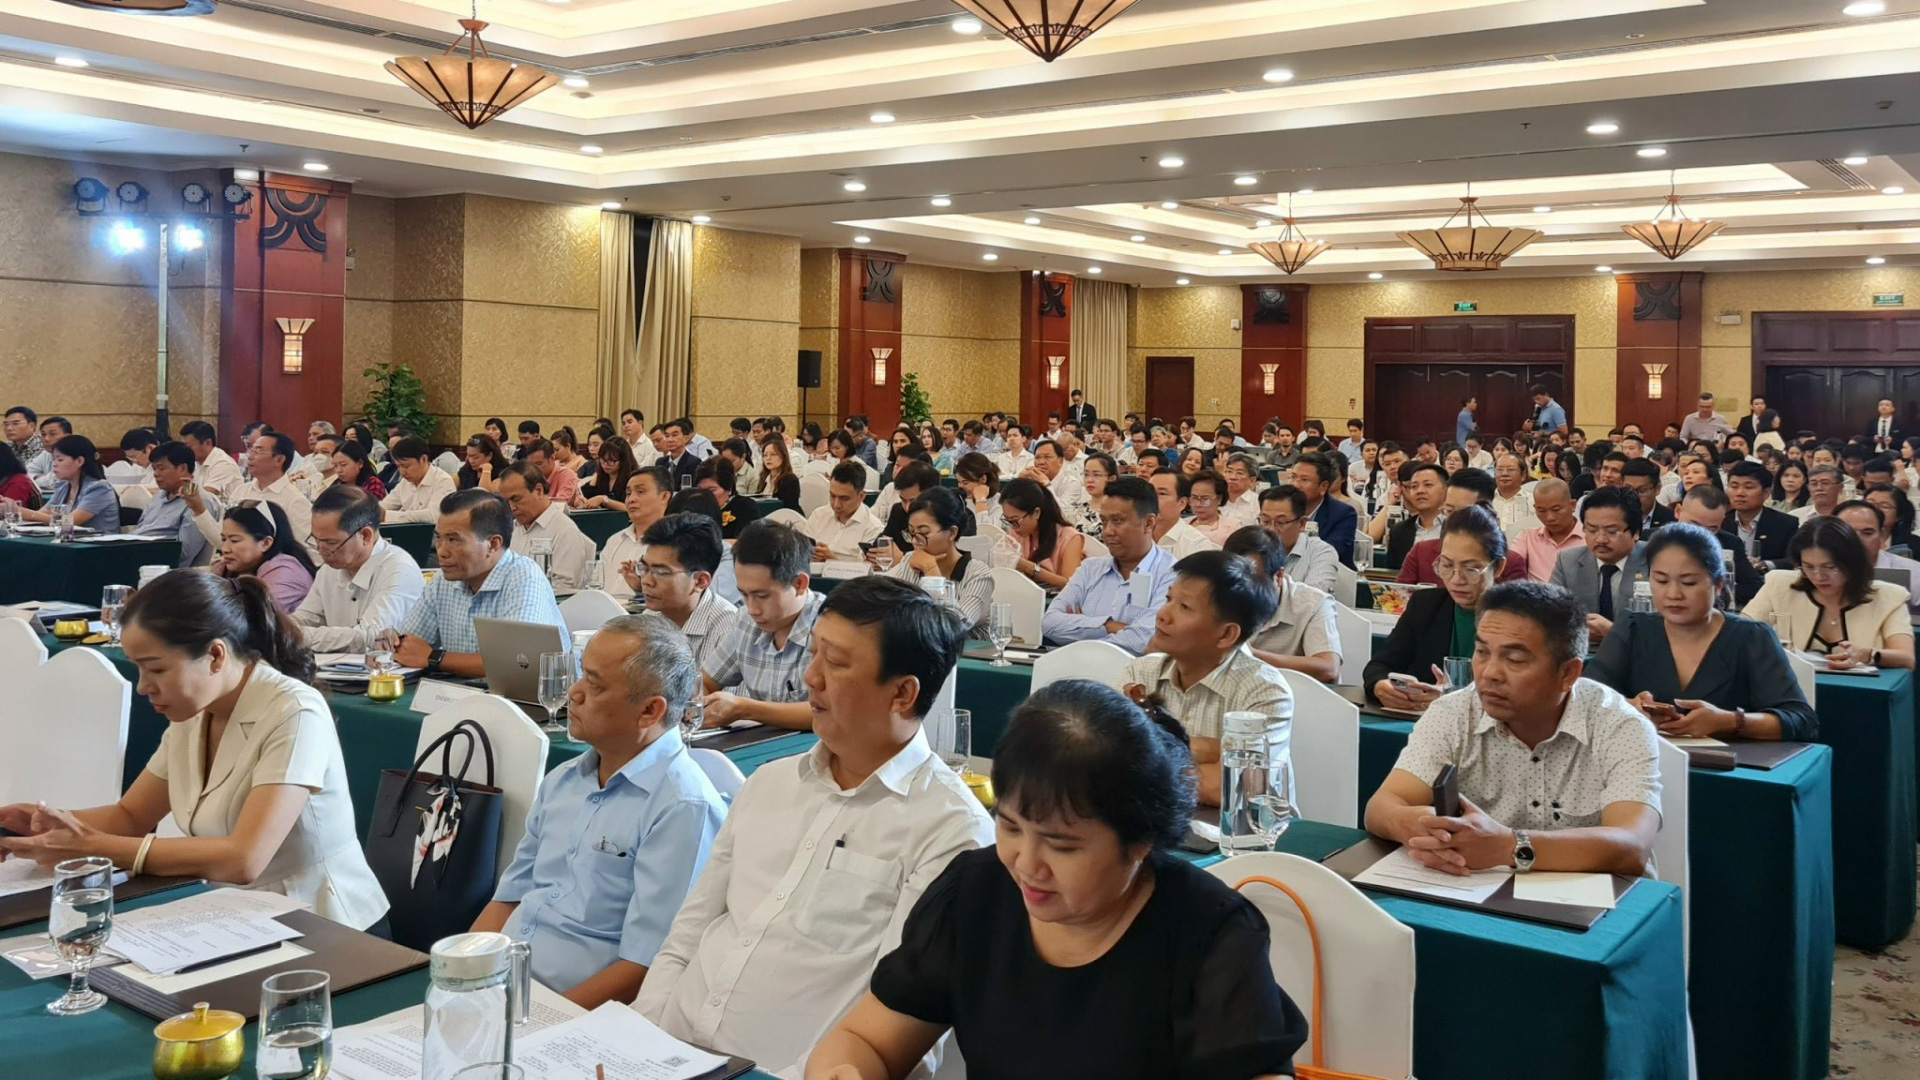 Hội nghị có sự tham dự của lãnh đạo các sở ngành, hội - hiệp hội và doanh nghiệp 6 địa phương tham gia liên kết với thành phố Hồ Chí Minh